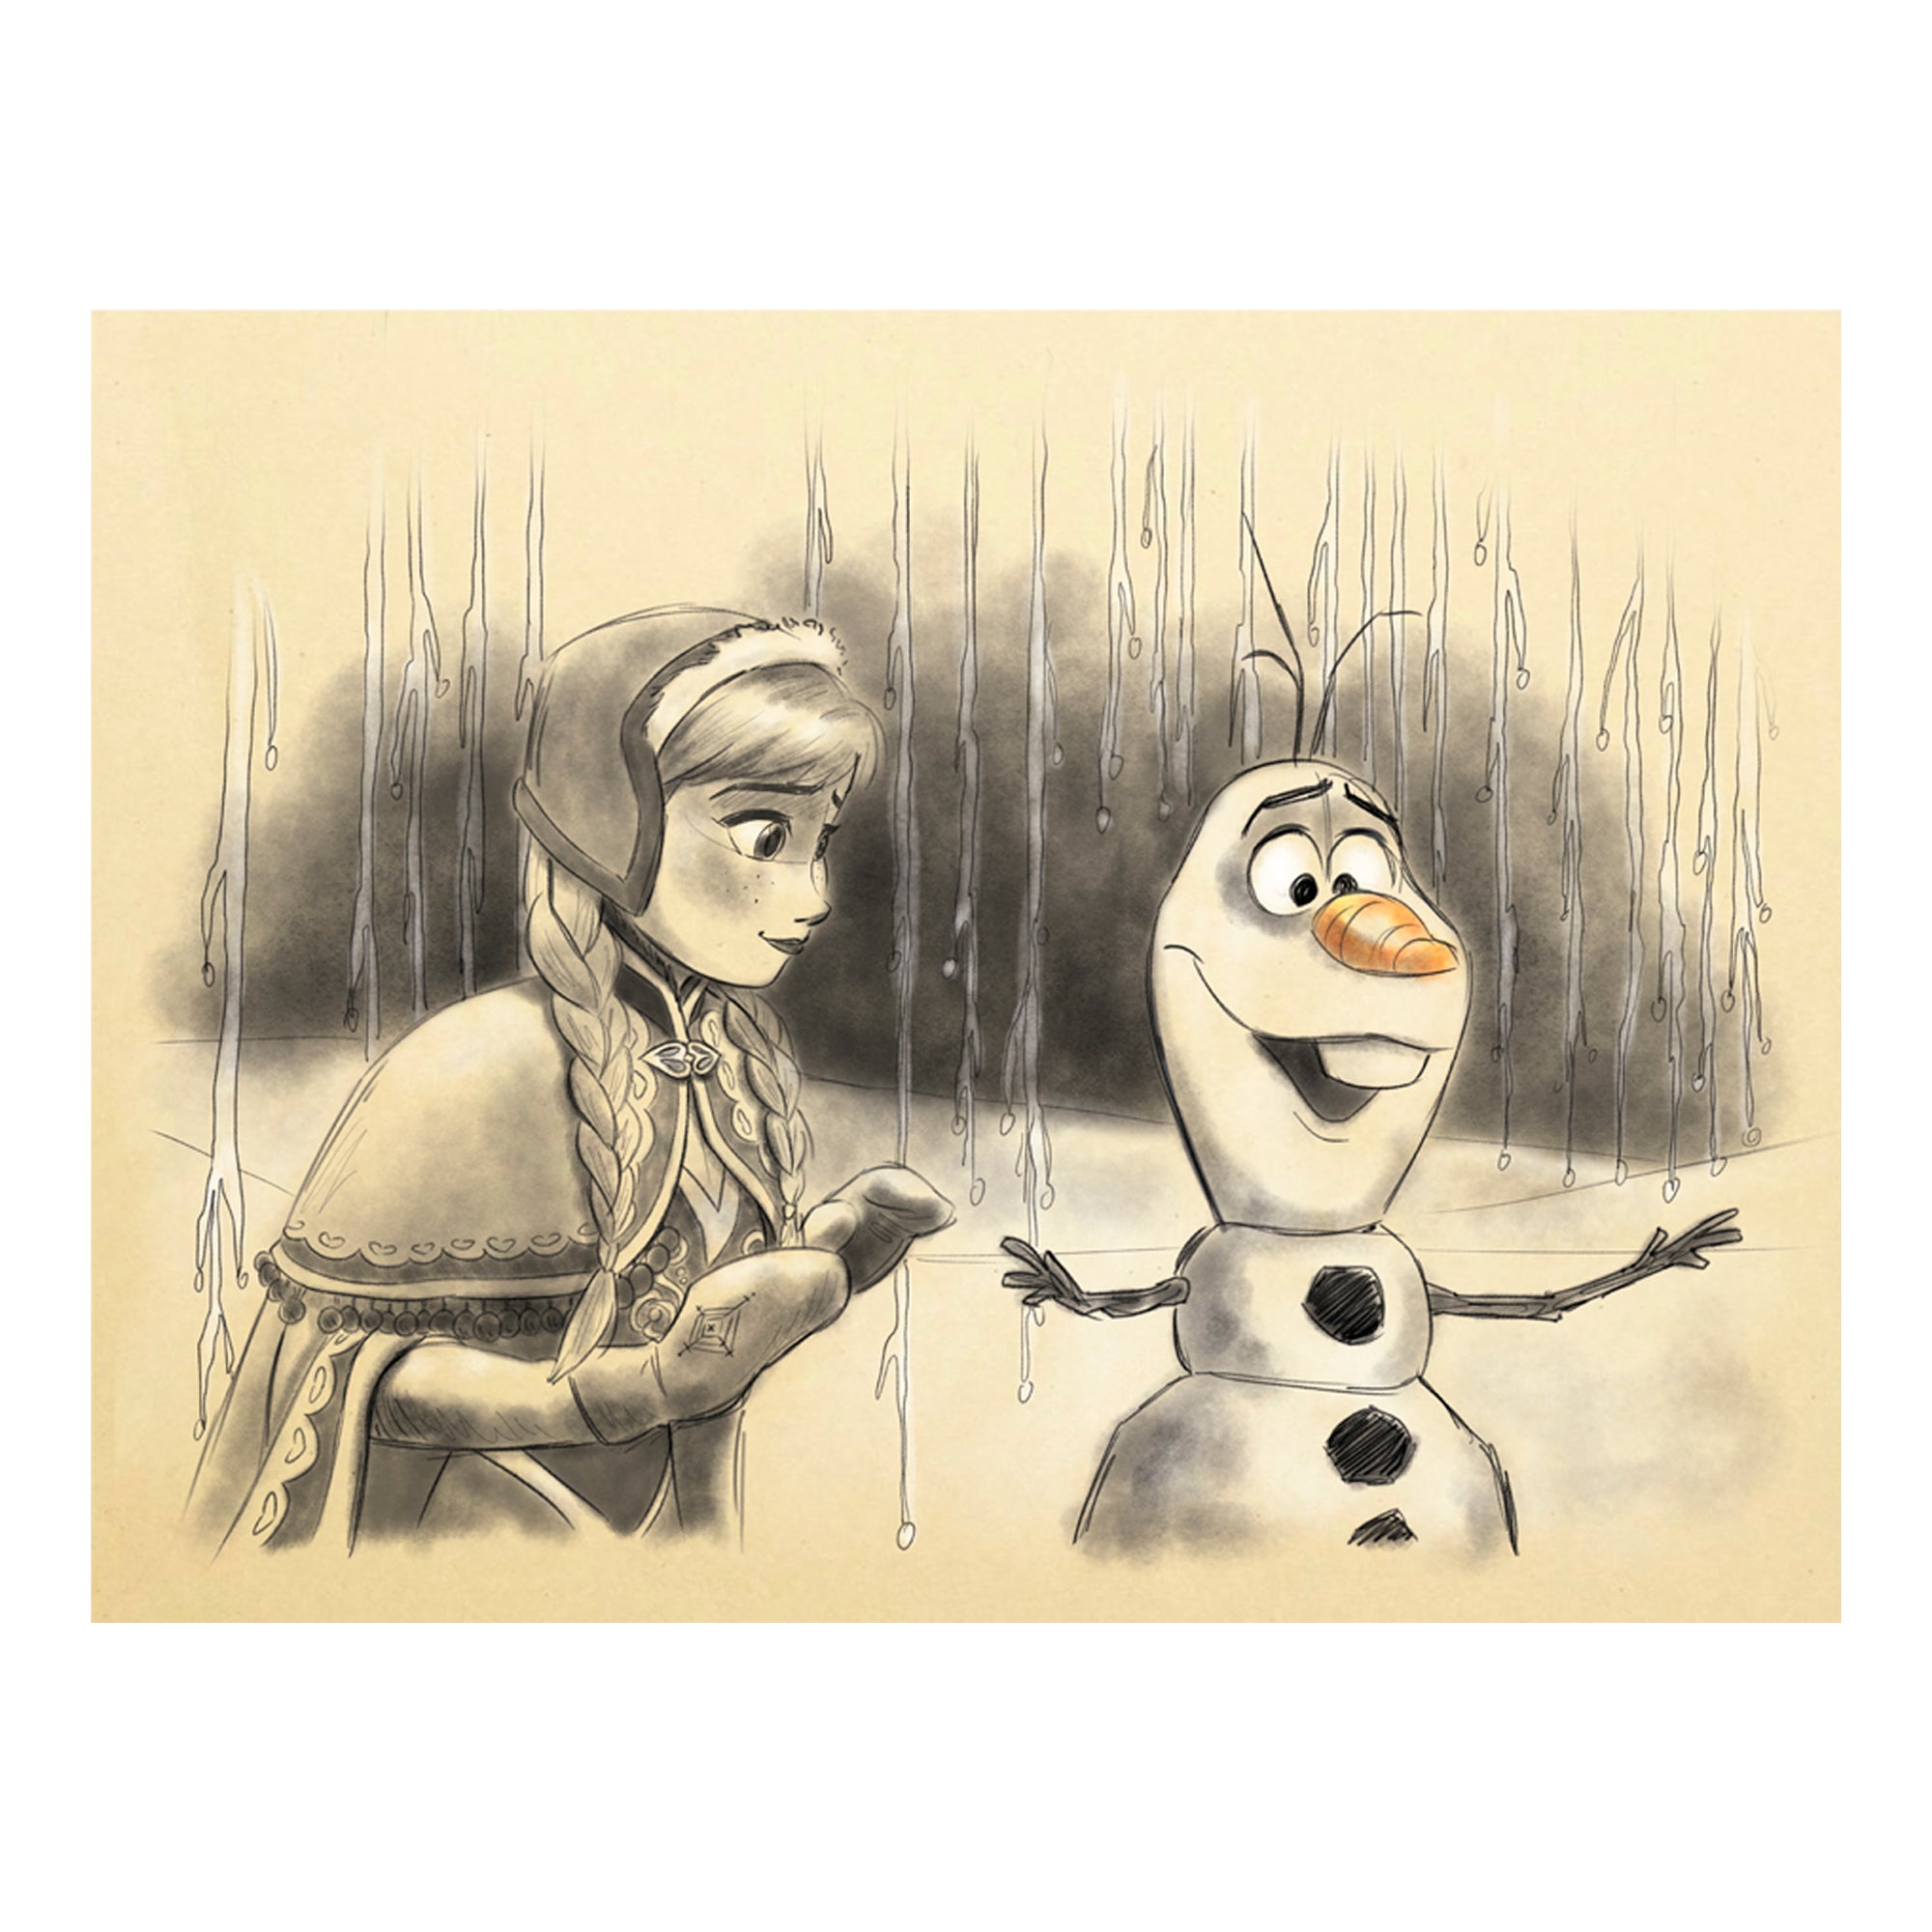 Pyro Art - Drawing Queen Anna - Frozen 2 | Facebook